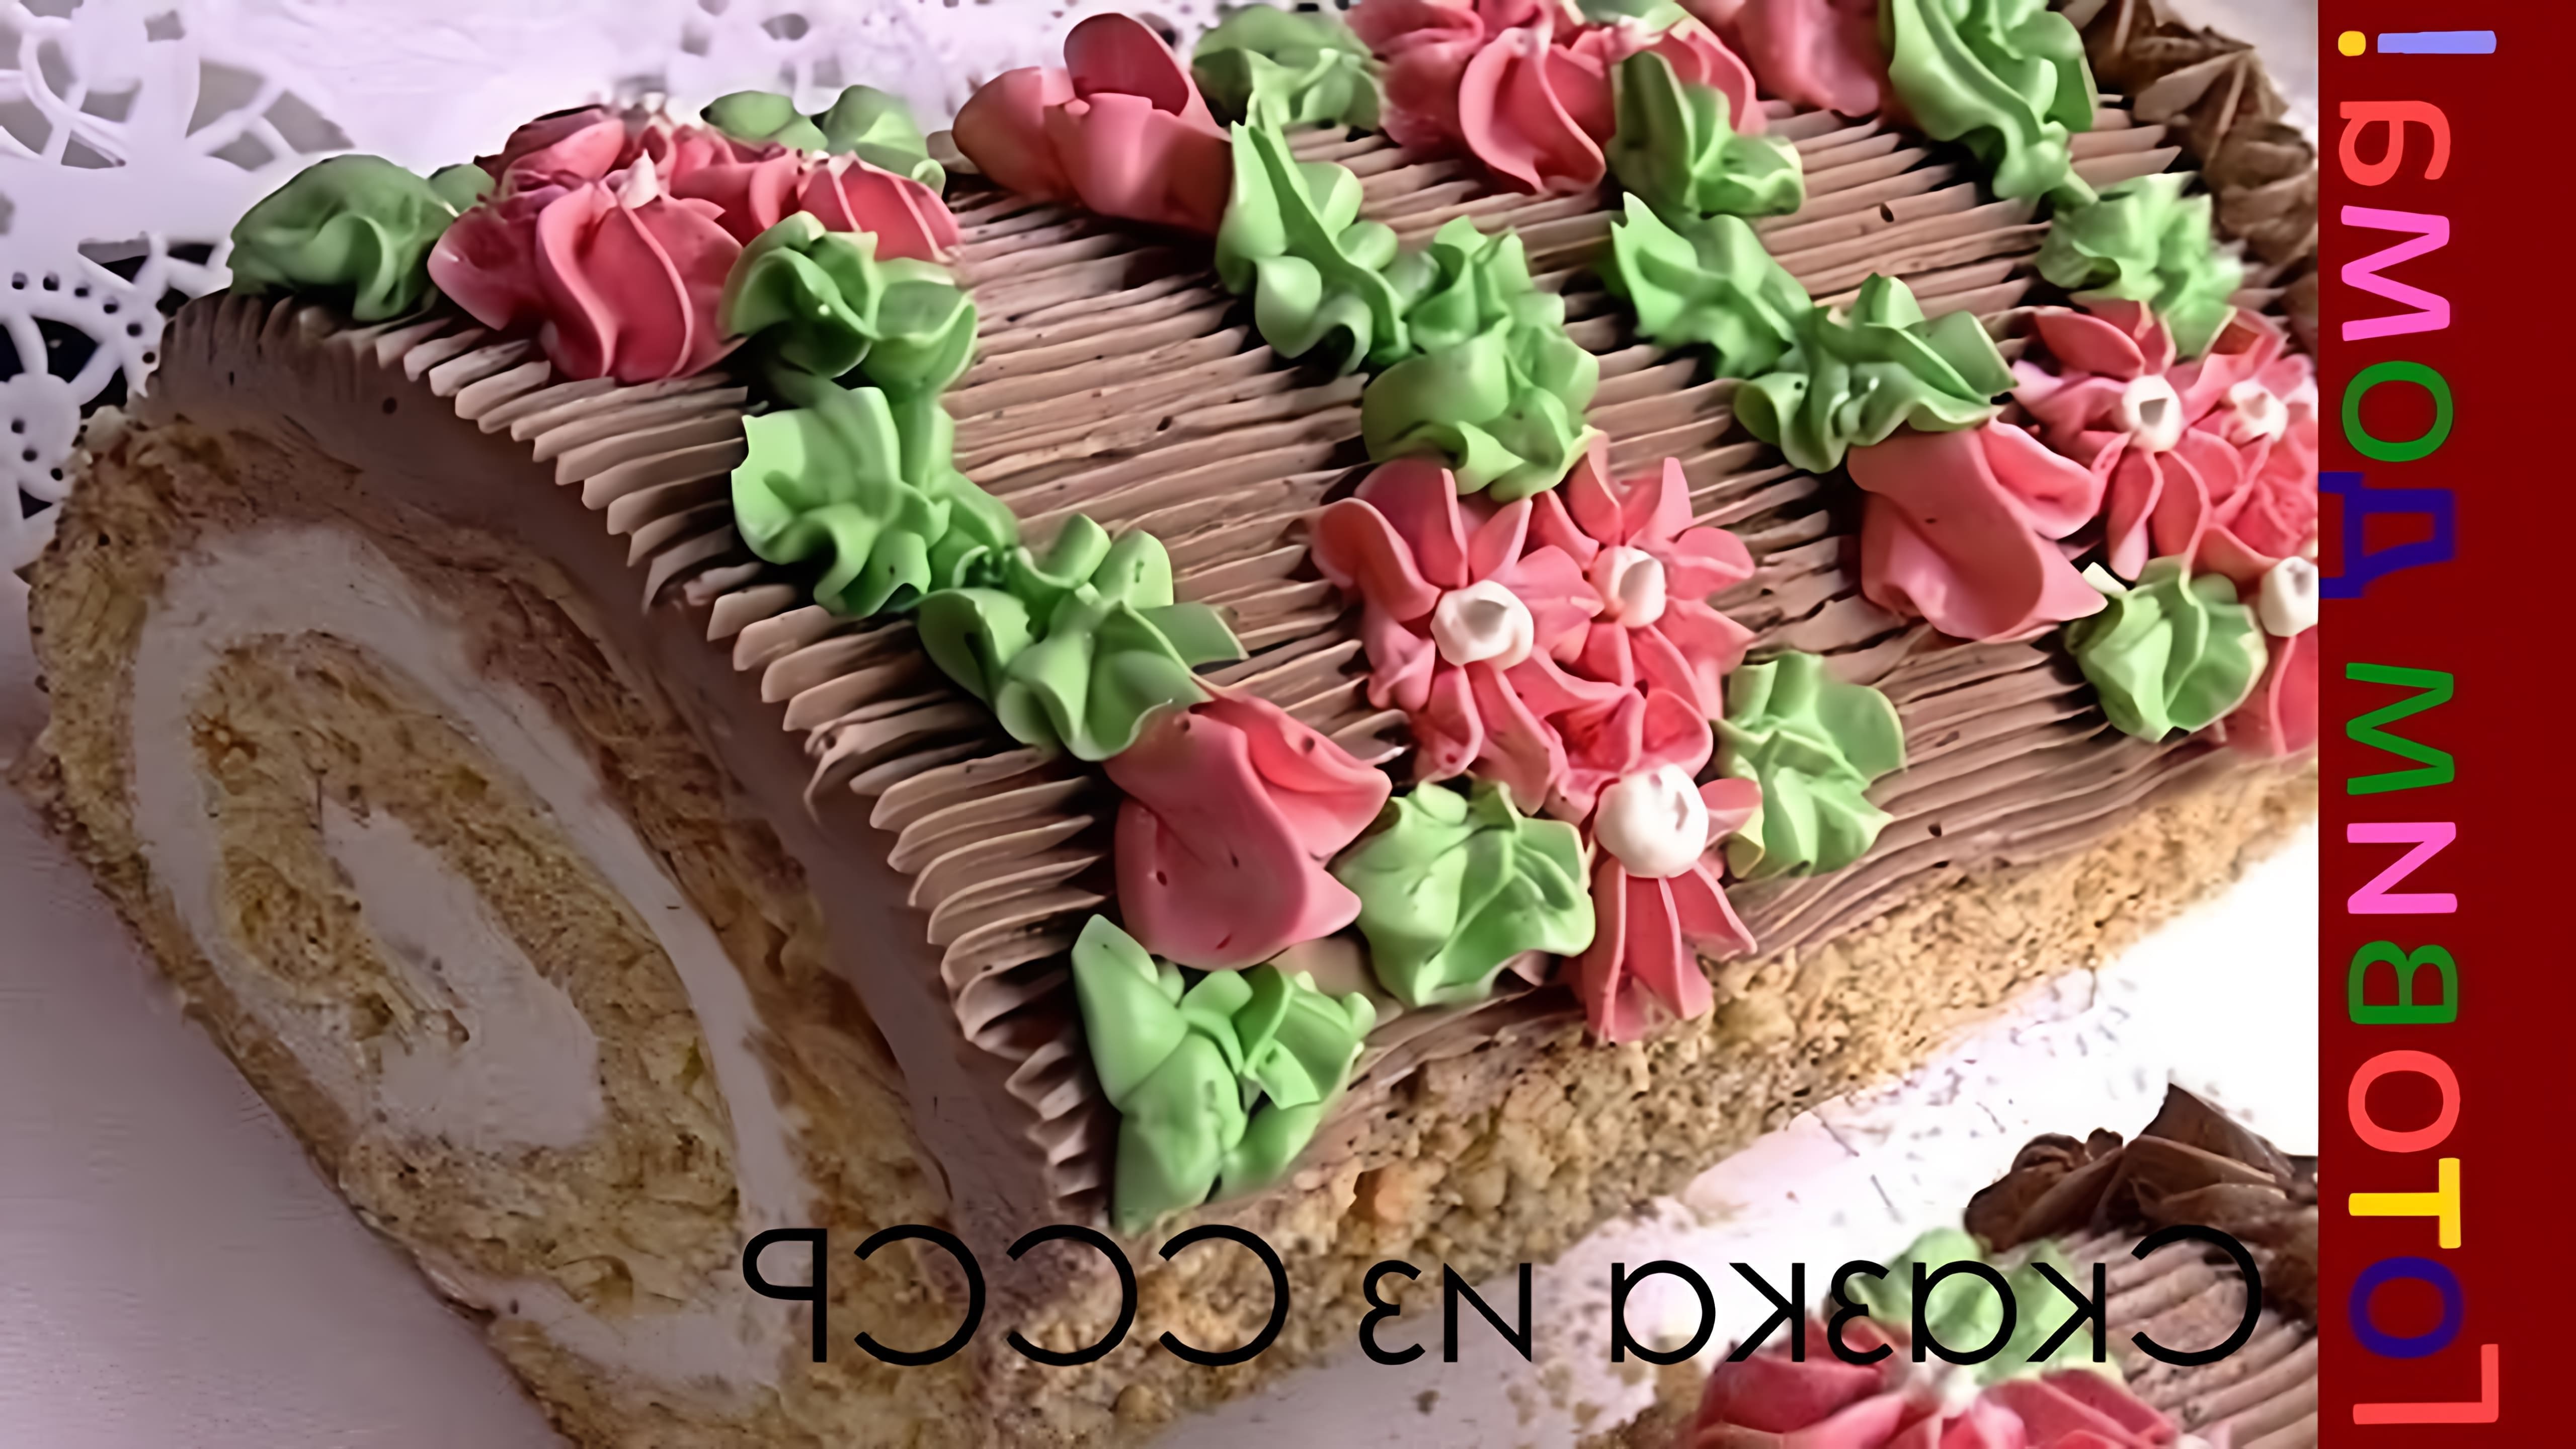 В этом видео-ролике мы увидим процесс приготовления торта "Сказка", который был очень популярен в СССР